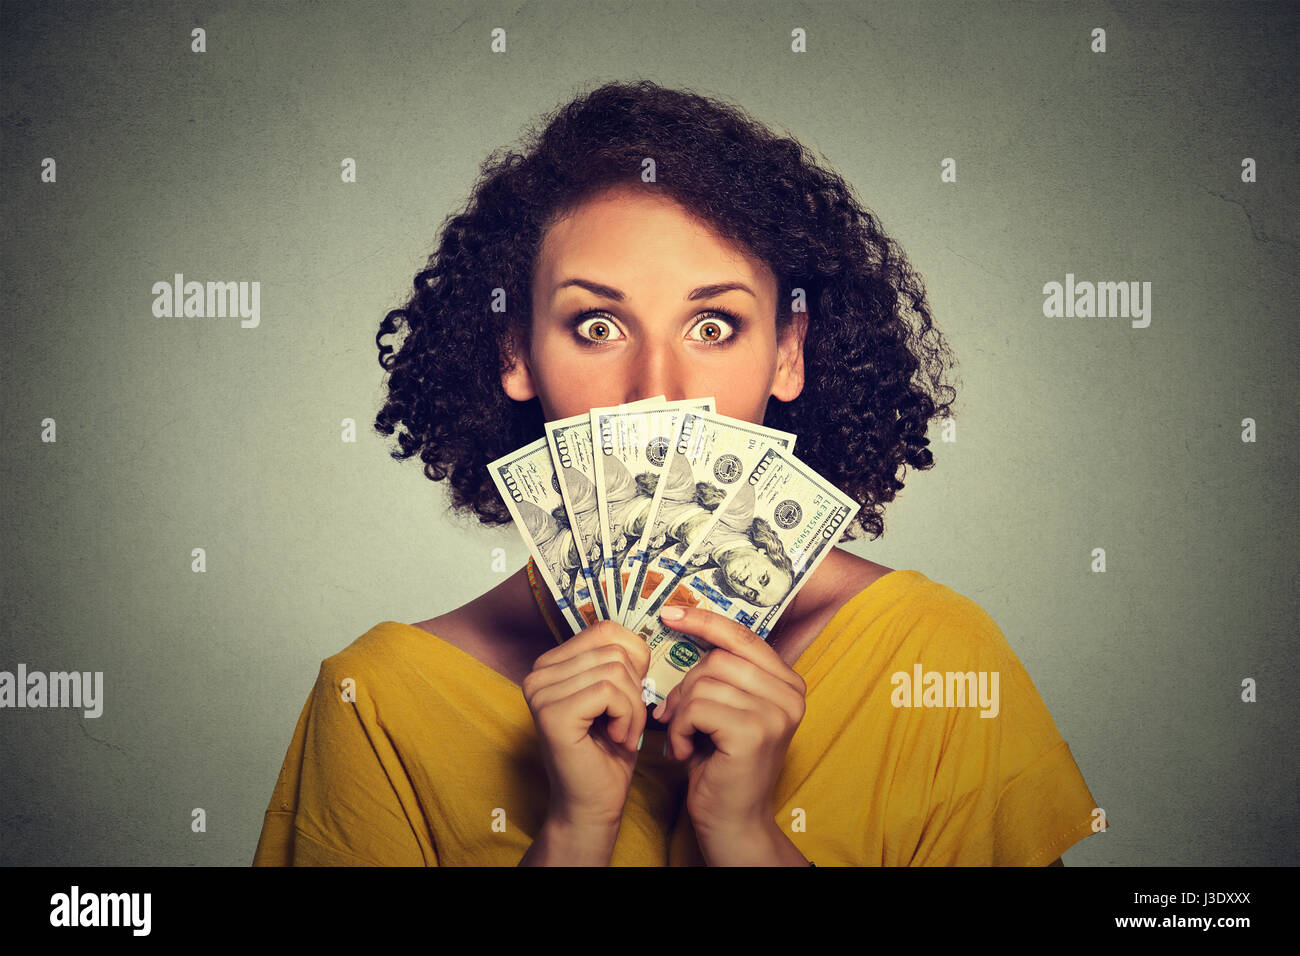 Asustada busca mujer ocultando recogida a través de los billetes en dólares Foto de stock